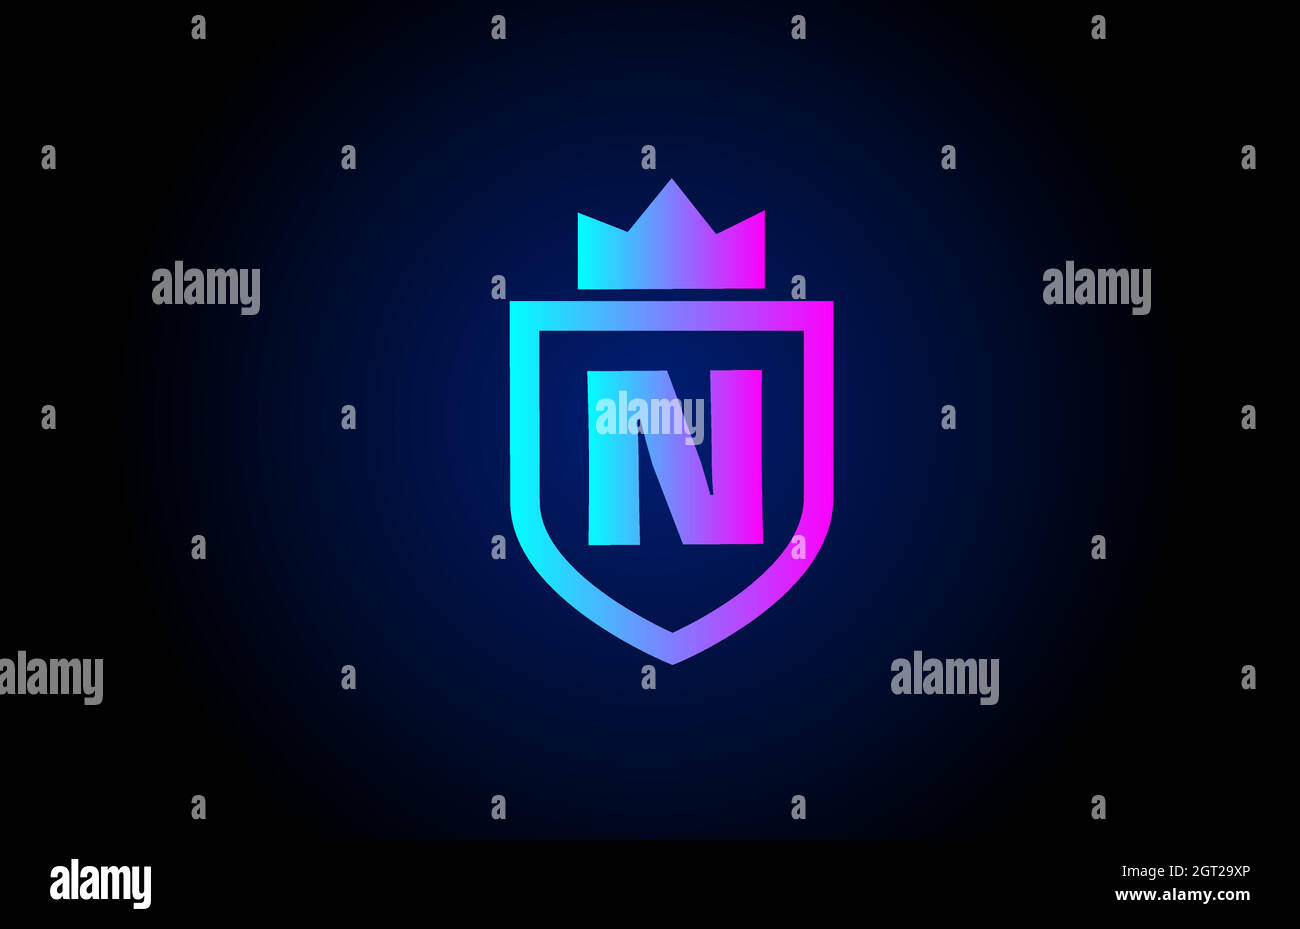 Royal N Alphabet Buchstaben Symbol Logo für Unternehmen. Firmendesign mit Königskrone und Schild in Farbverlauf für Corporate Identity Stock Vektor